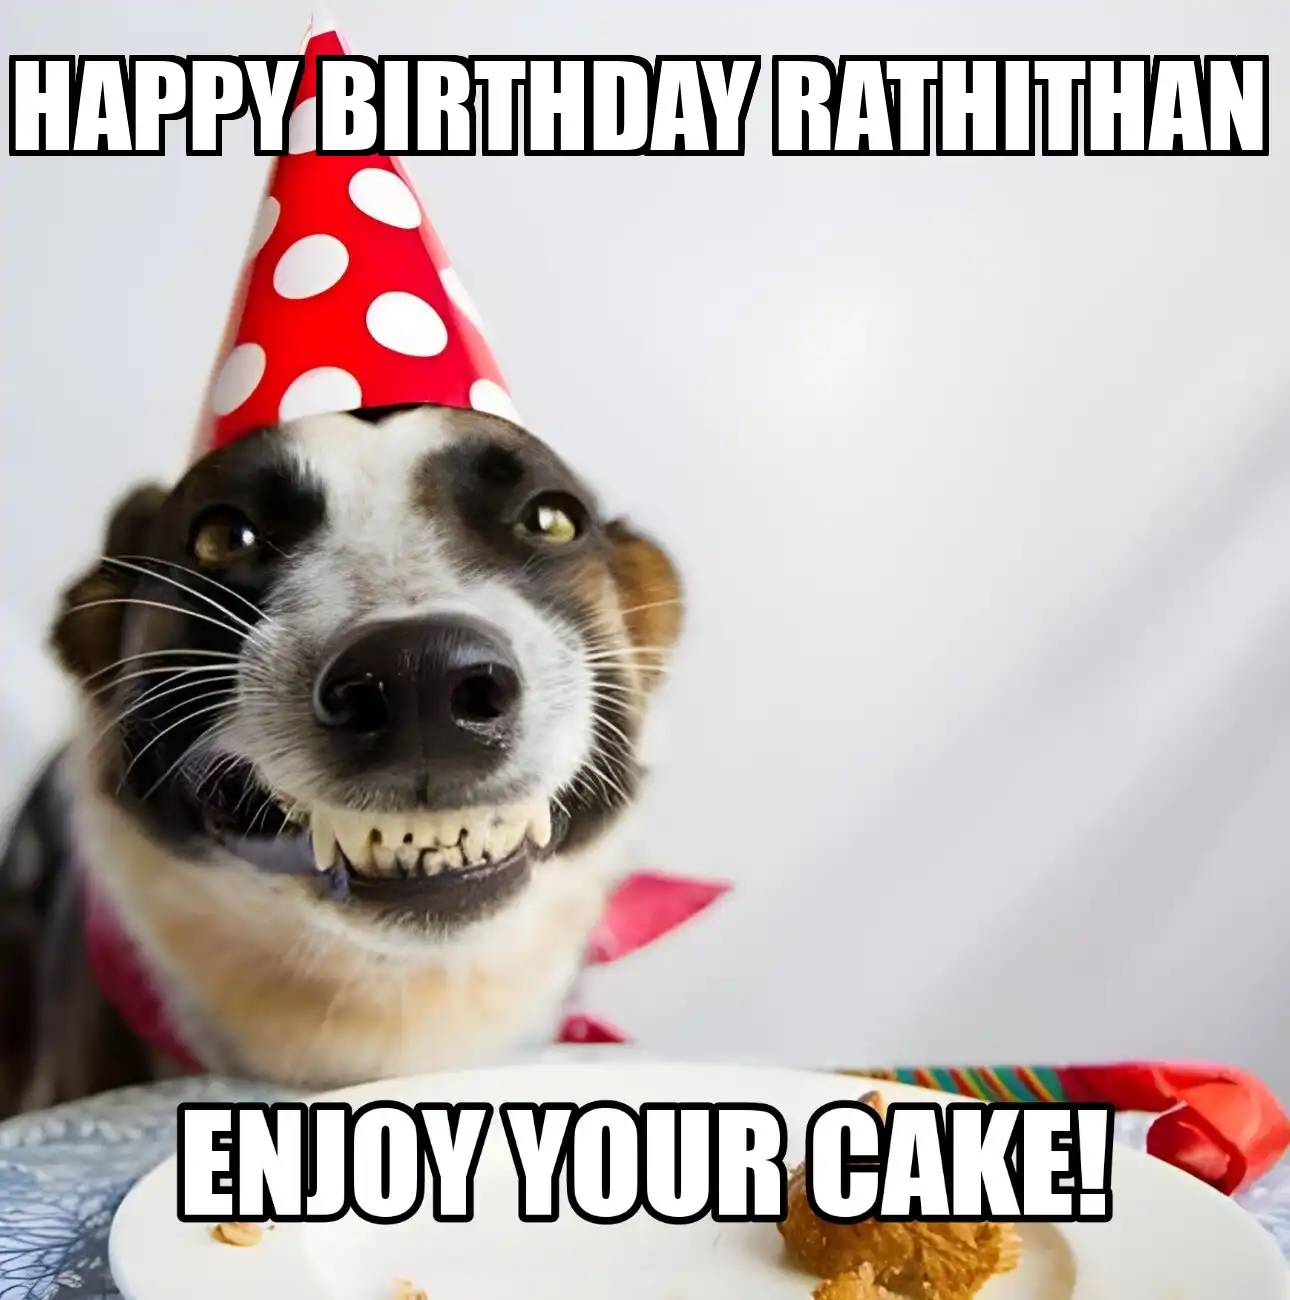 Happy Birthday Rathithan Enjoy Your Cake Dog Meme